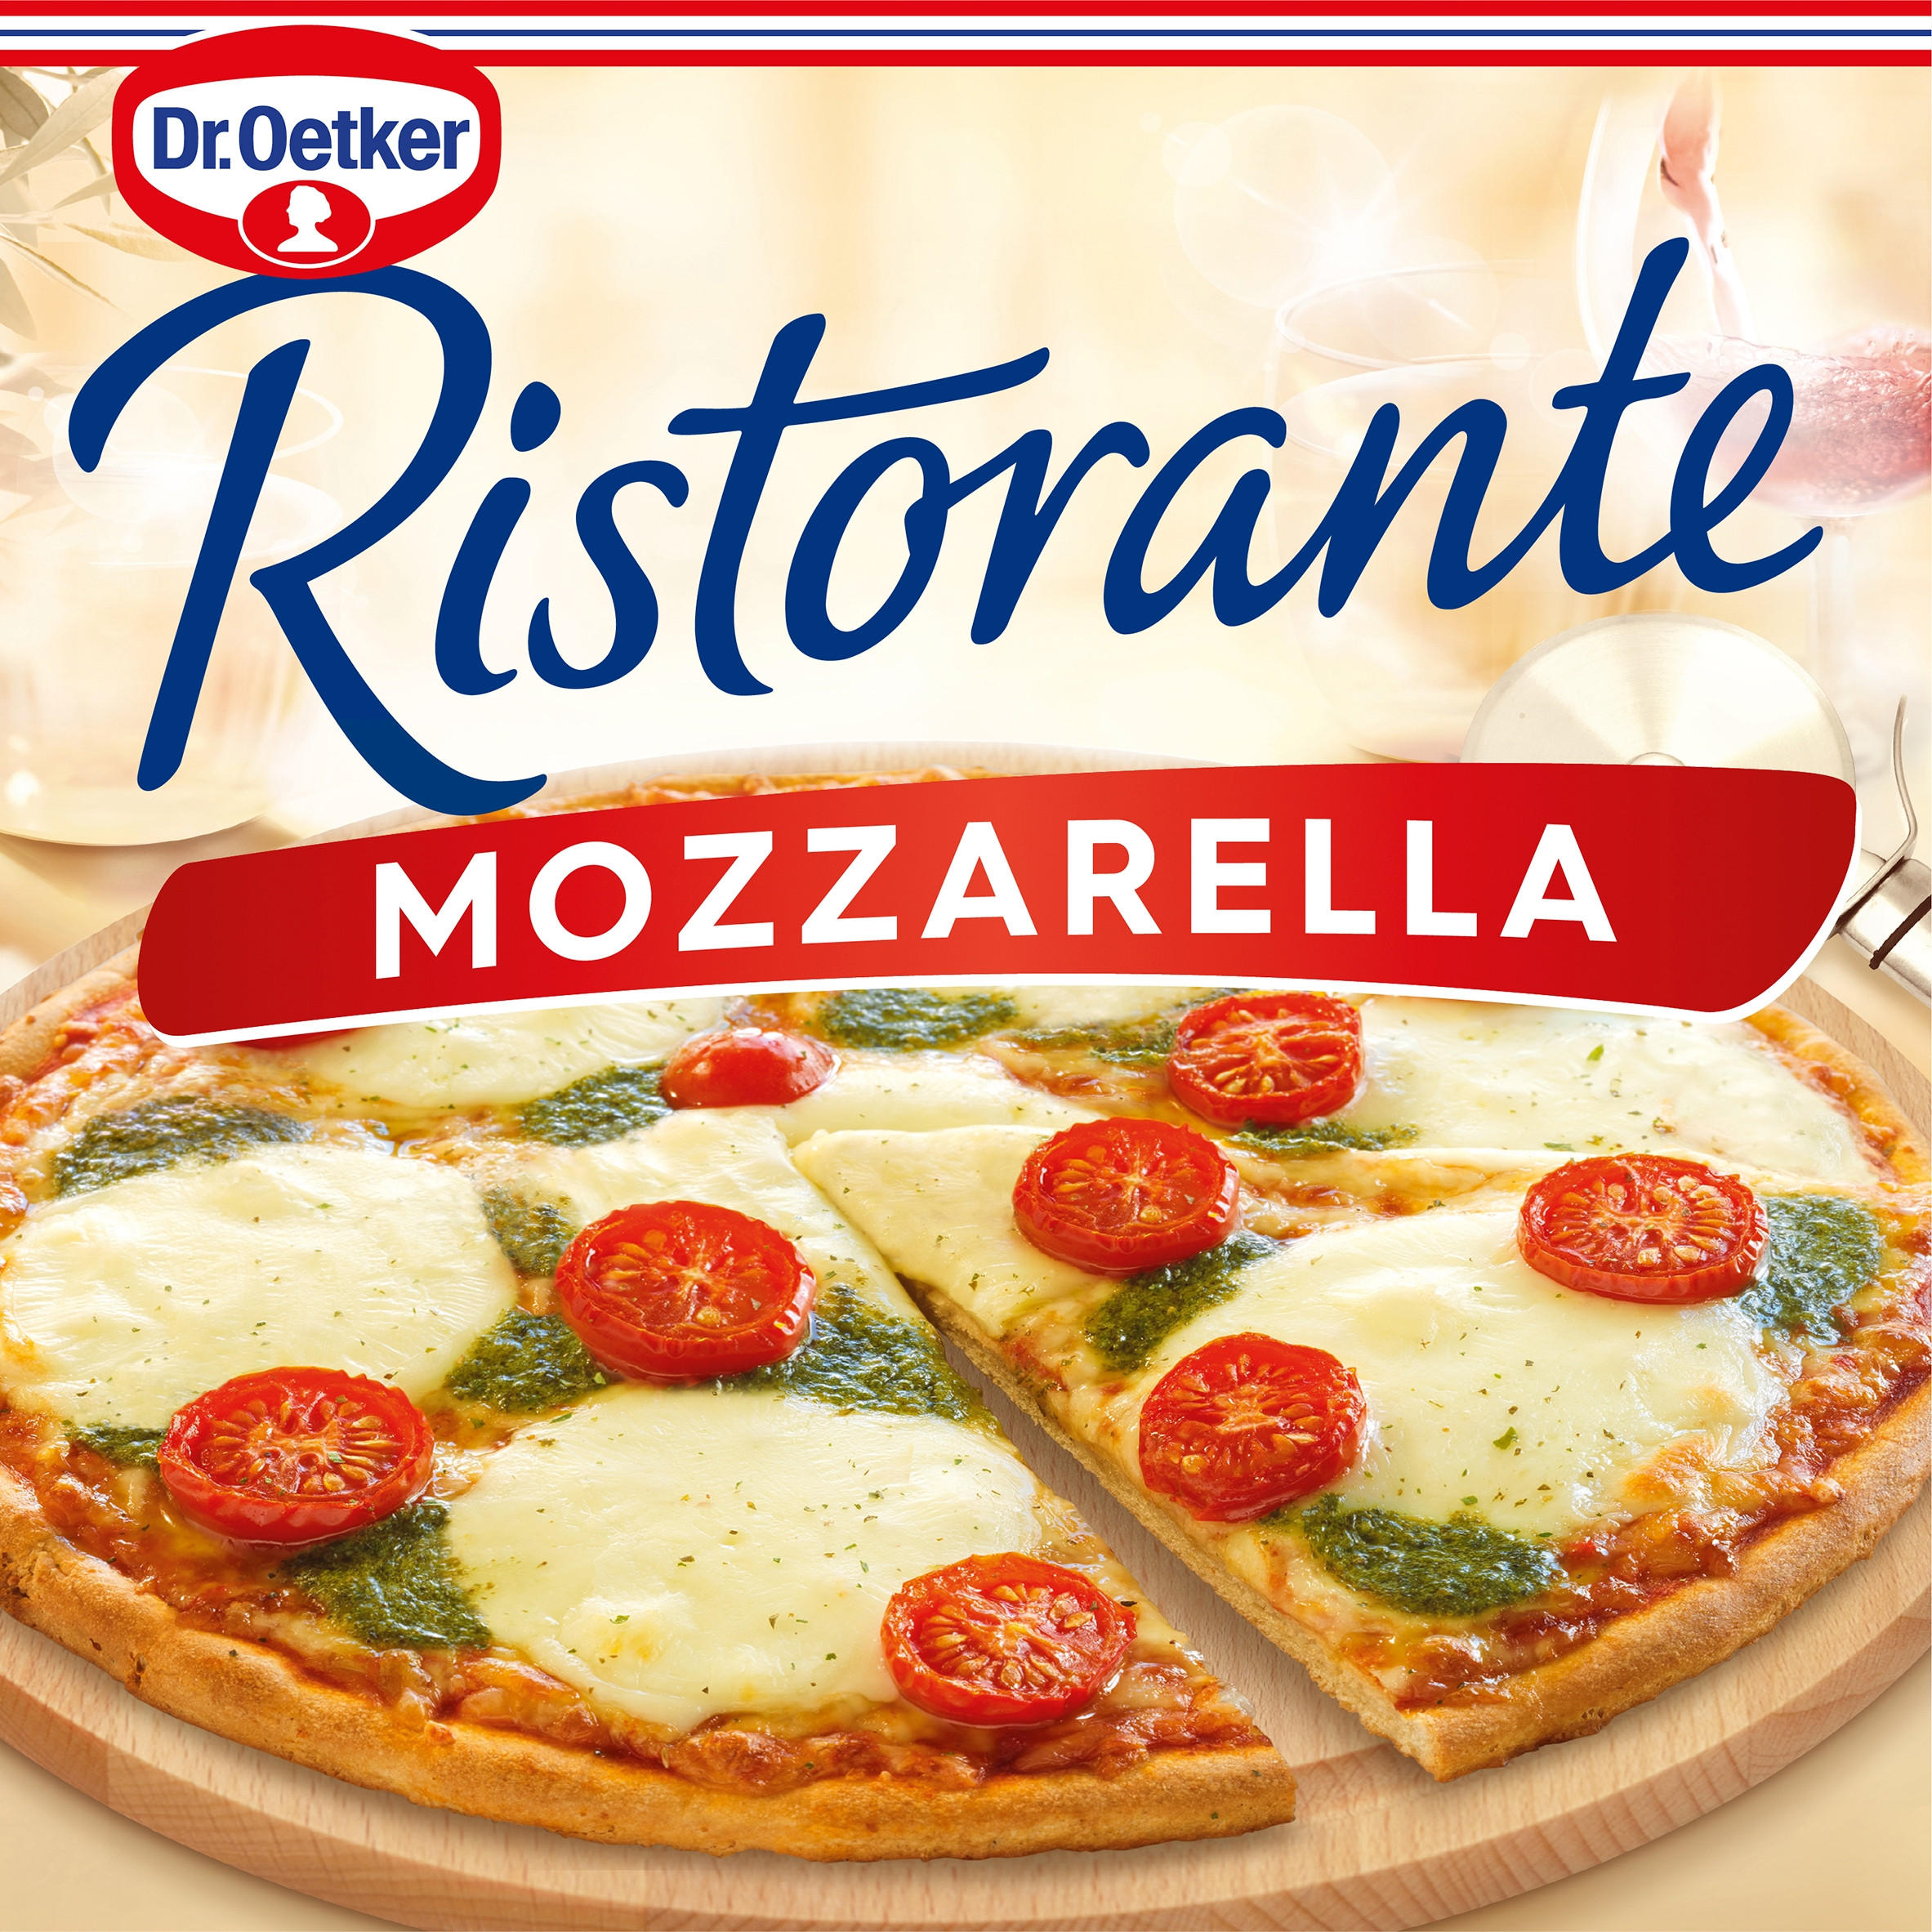 Pizza mozzarella Ristorante Dr. Oetker sin gluten sin lactosa 370 g.